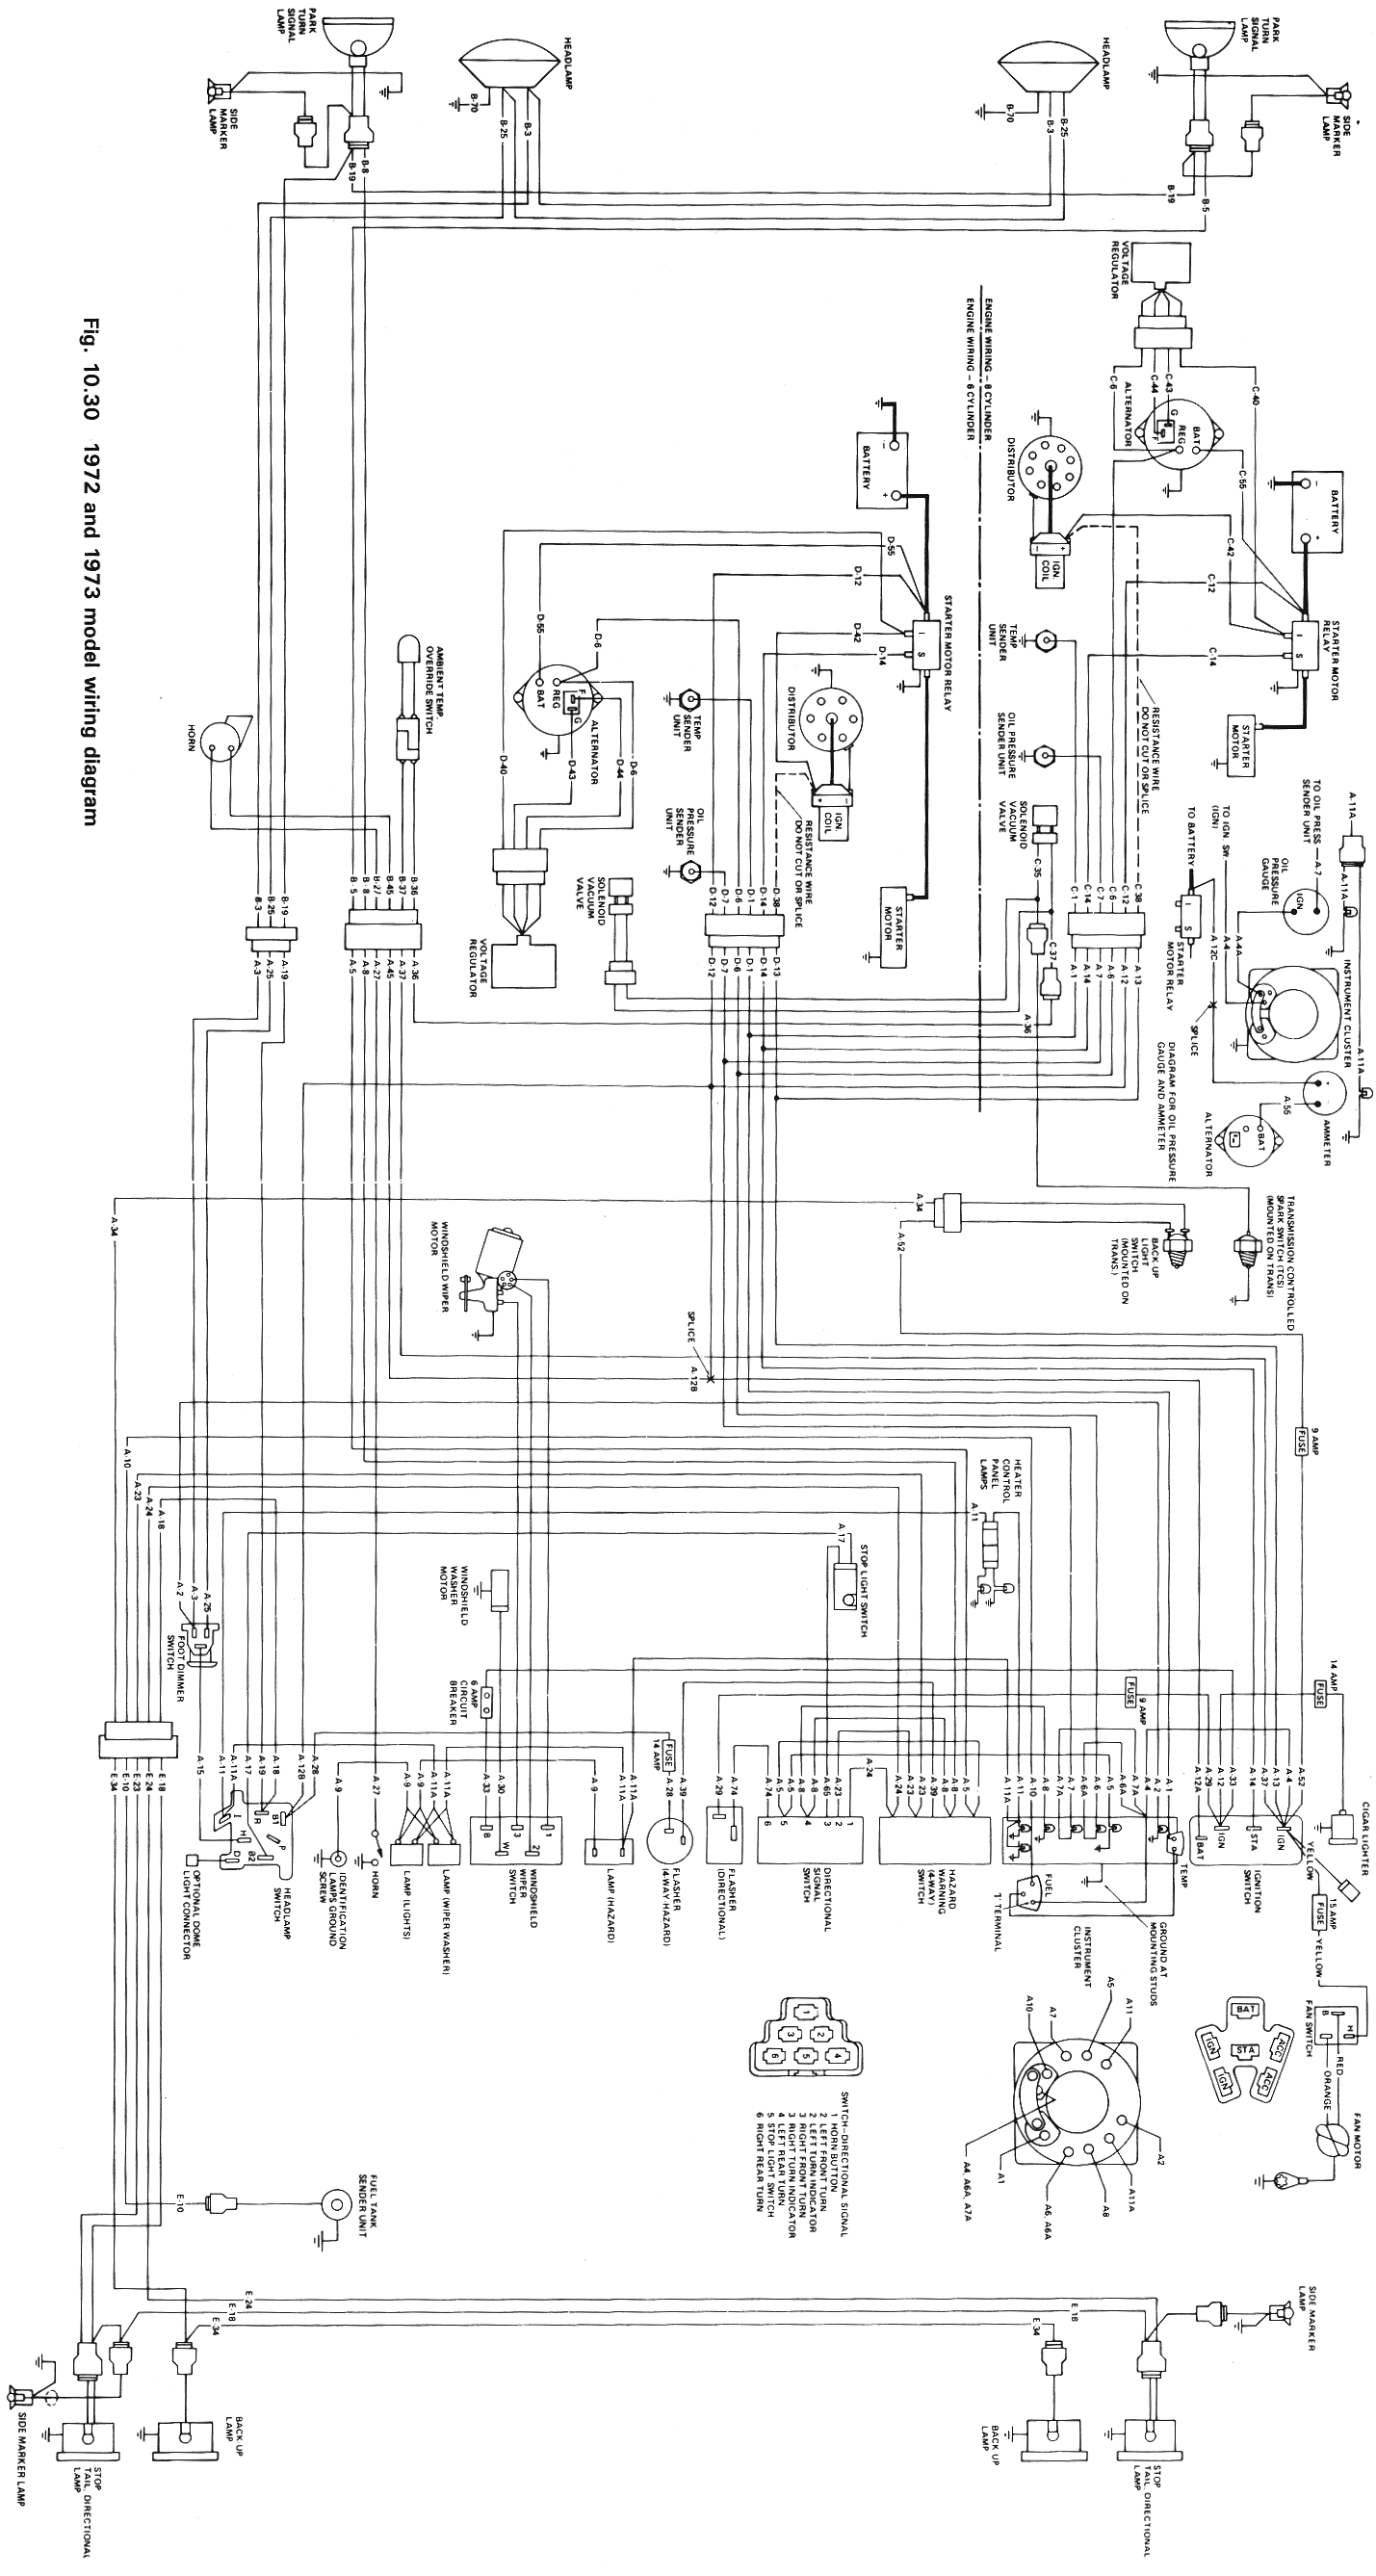 Wiring Schematics | eWillys  1974 Jeep Cj5 Wiring Diagram    eWillys